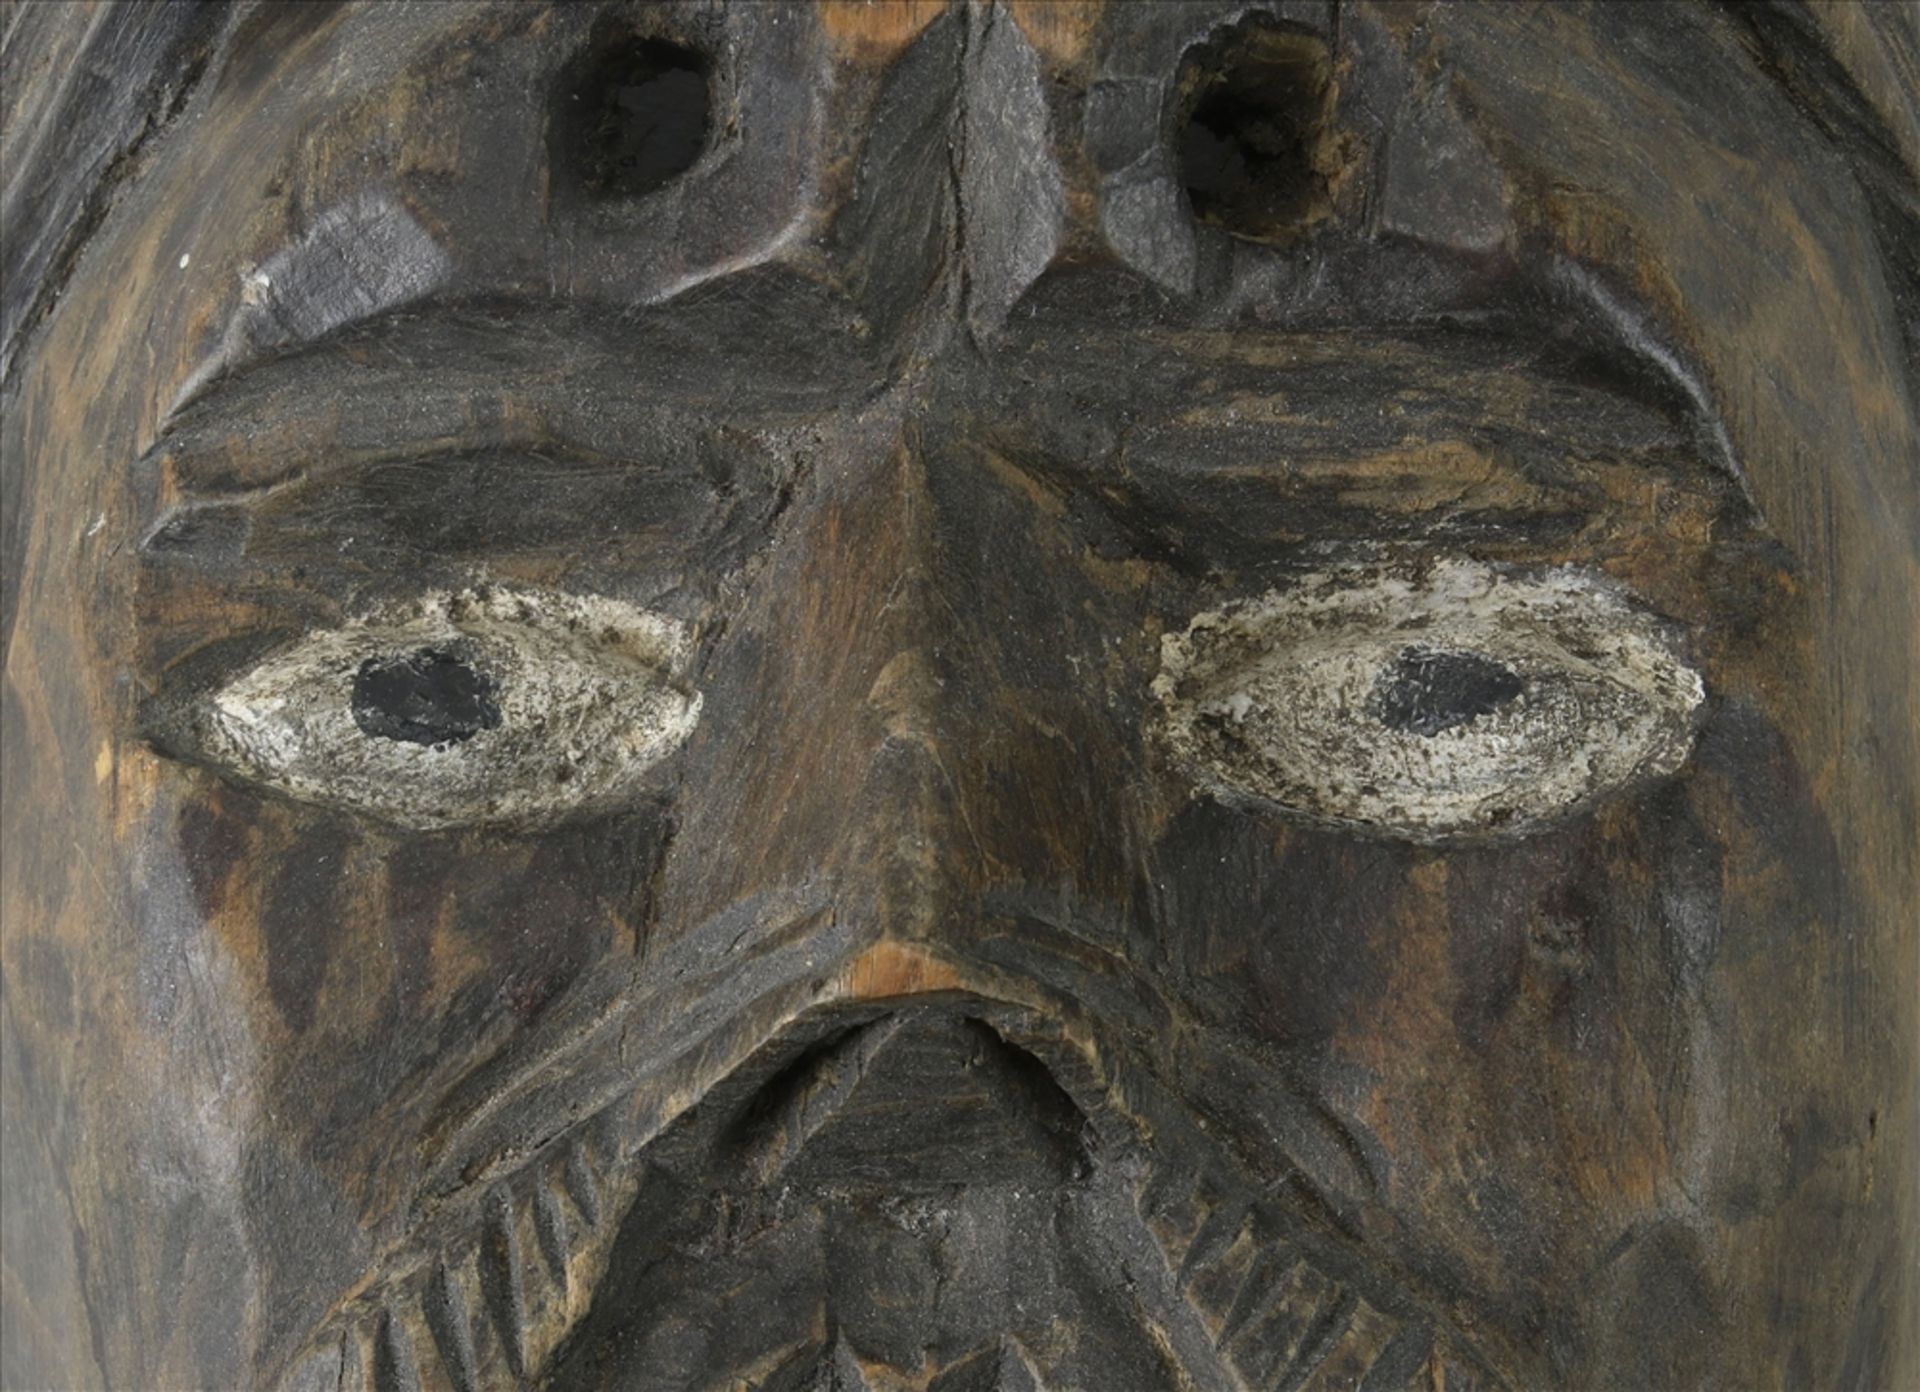 Maske Wohl Kongo um 1900. Hartholz, teils mit Vögeln geschnitzt, die Augen staffiert. Größe ca. 24,5 - Bild 4 aus 7